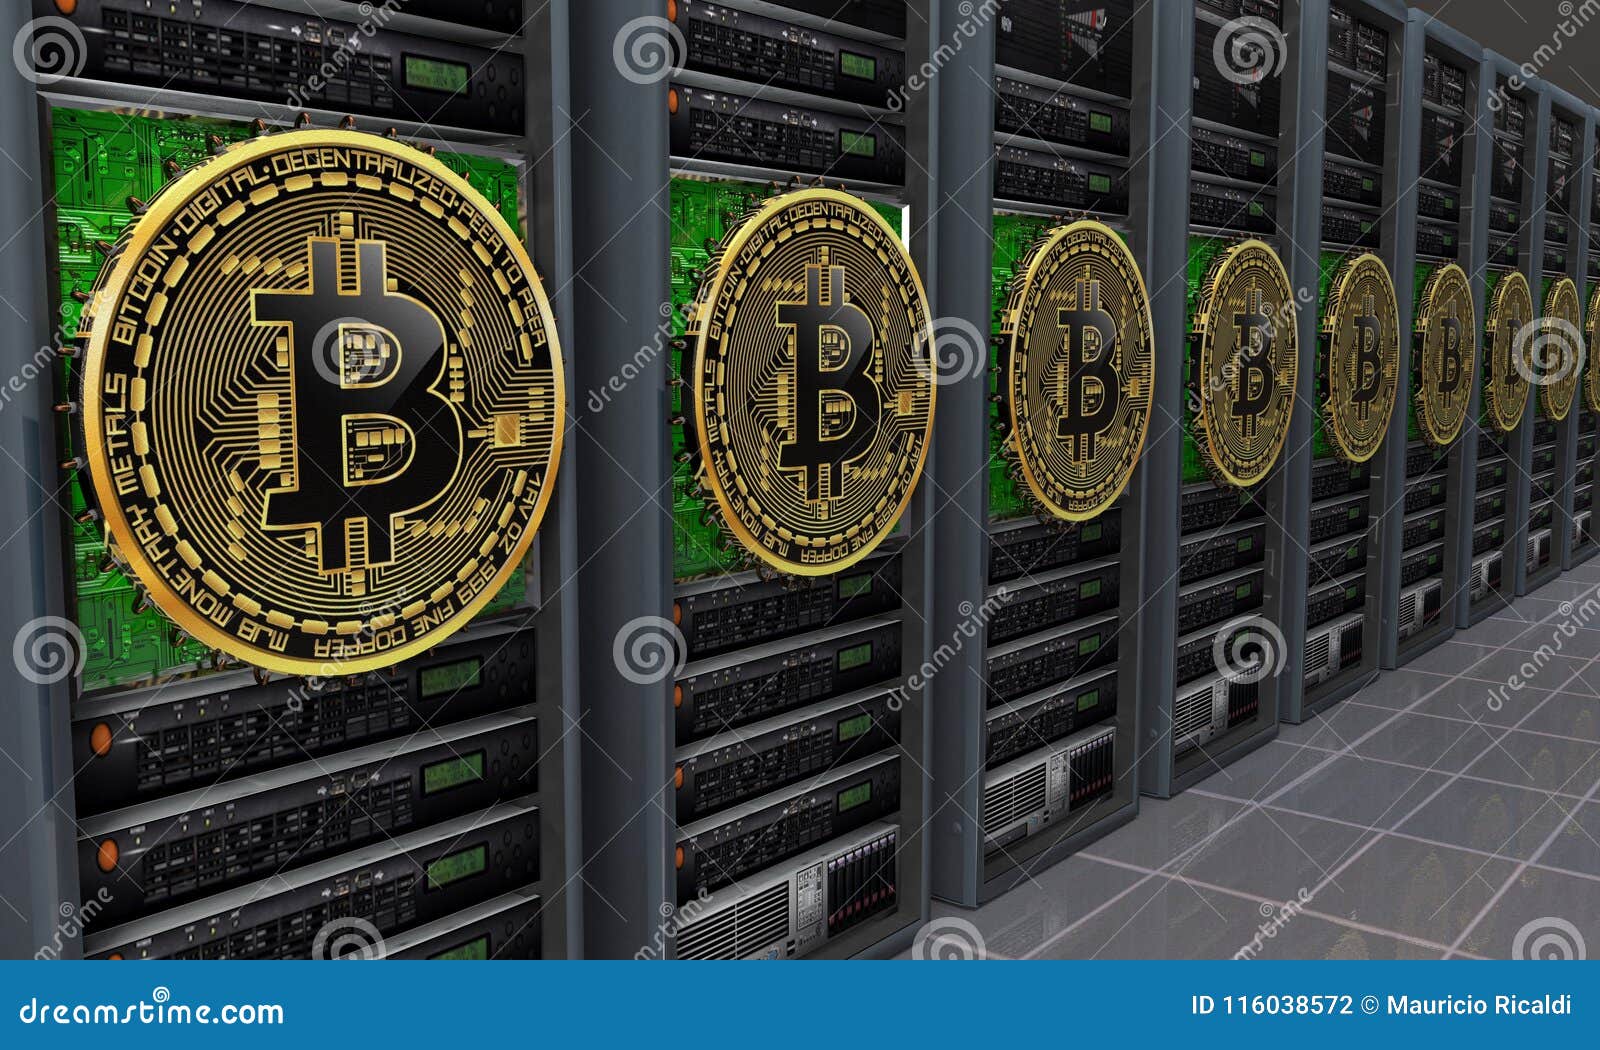 bitcoin server wsj bitcoin